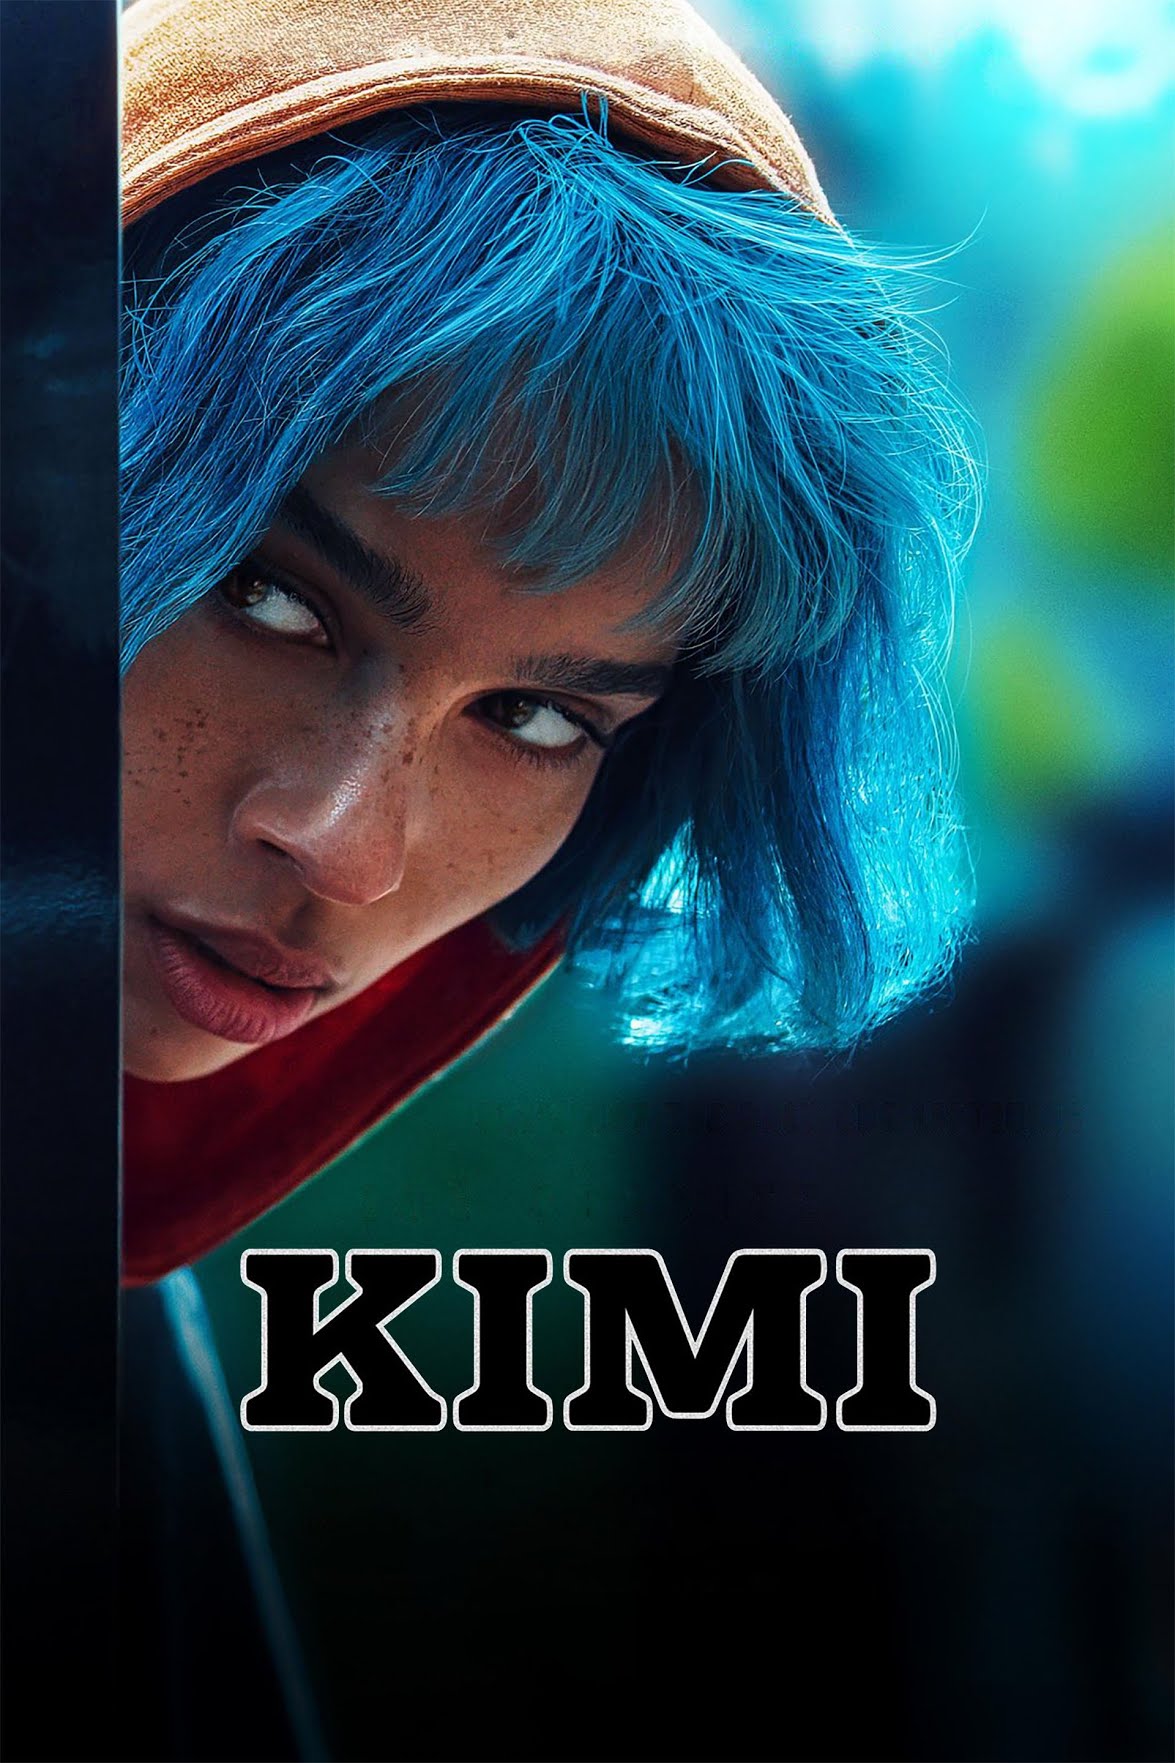 [ฝรั่ง] Kimi (2022) คิมิ [1080p] [HBO Max] [พากย์อังกฤษ 5.1] [Soundtrack บรรยายไทย + อังกฤษ] [เสียงอังกฤษ + ซับไทย] [USERLOAD]